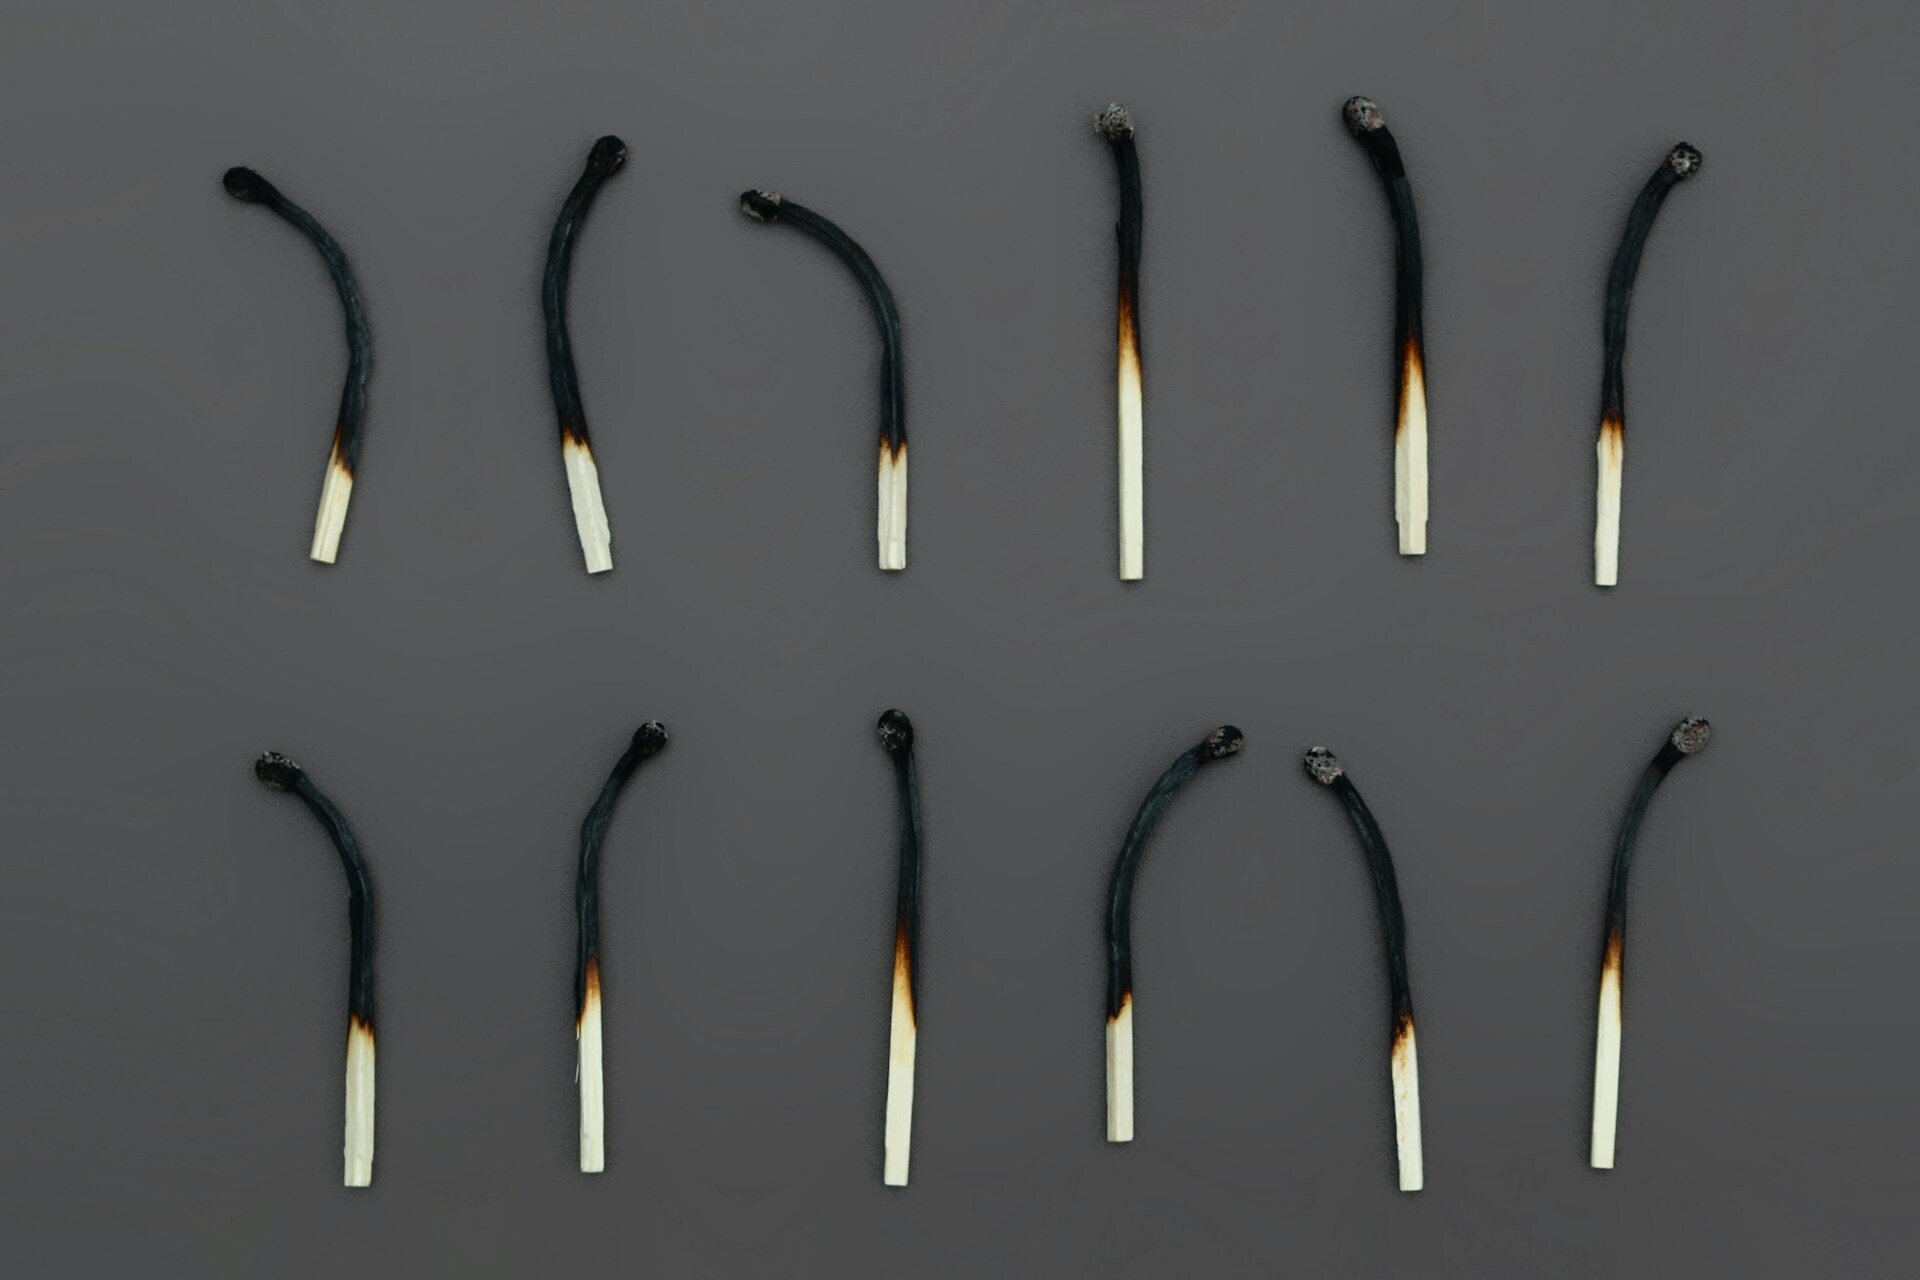 Das Bild zeigt 10 abgebrannte Streichhölzer | © Anne Nygard/Unsplash